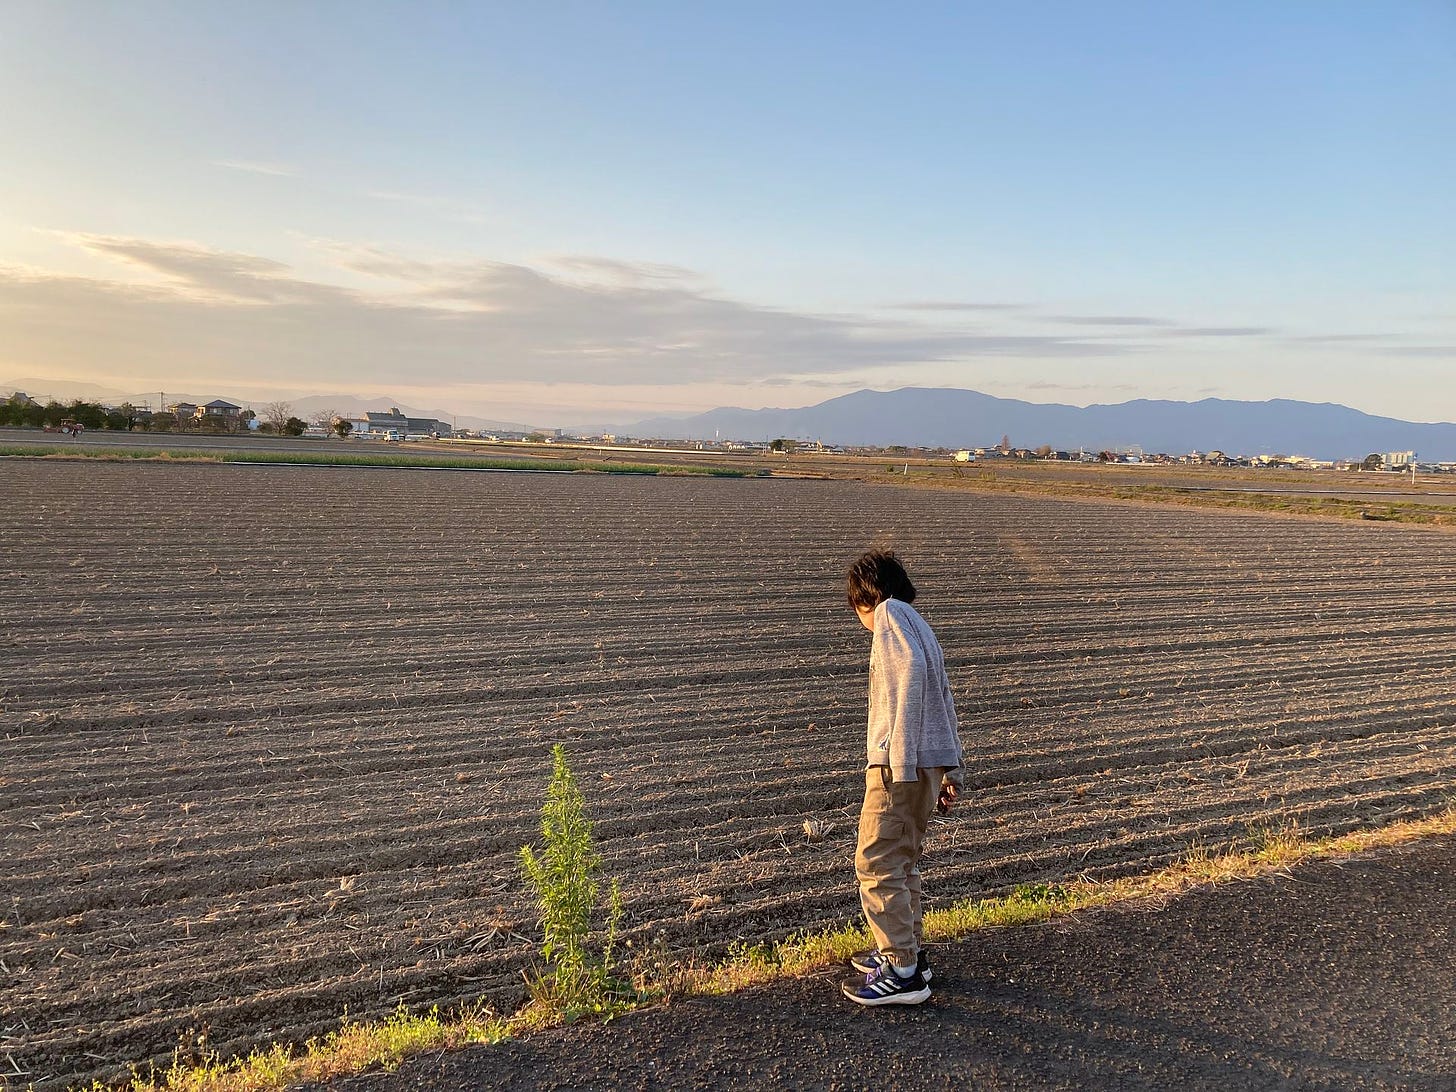 佐賀平野。作物の刈り取りが終わり、だだっ広い畑が広がっている。夕暮れ時で東の空が赤くなっている。畑を見下ろす六歳児。